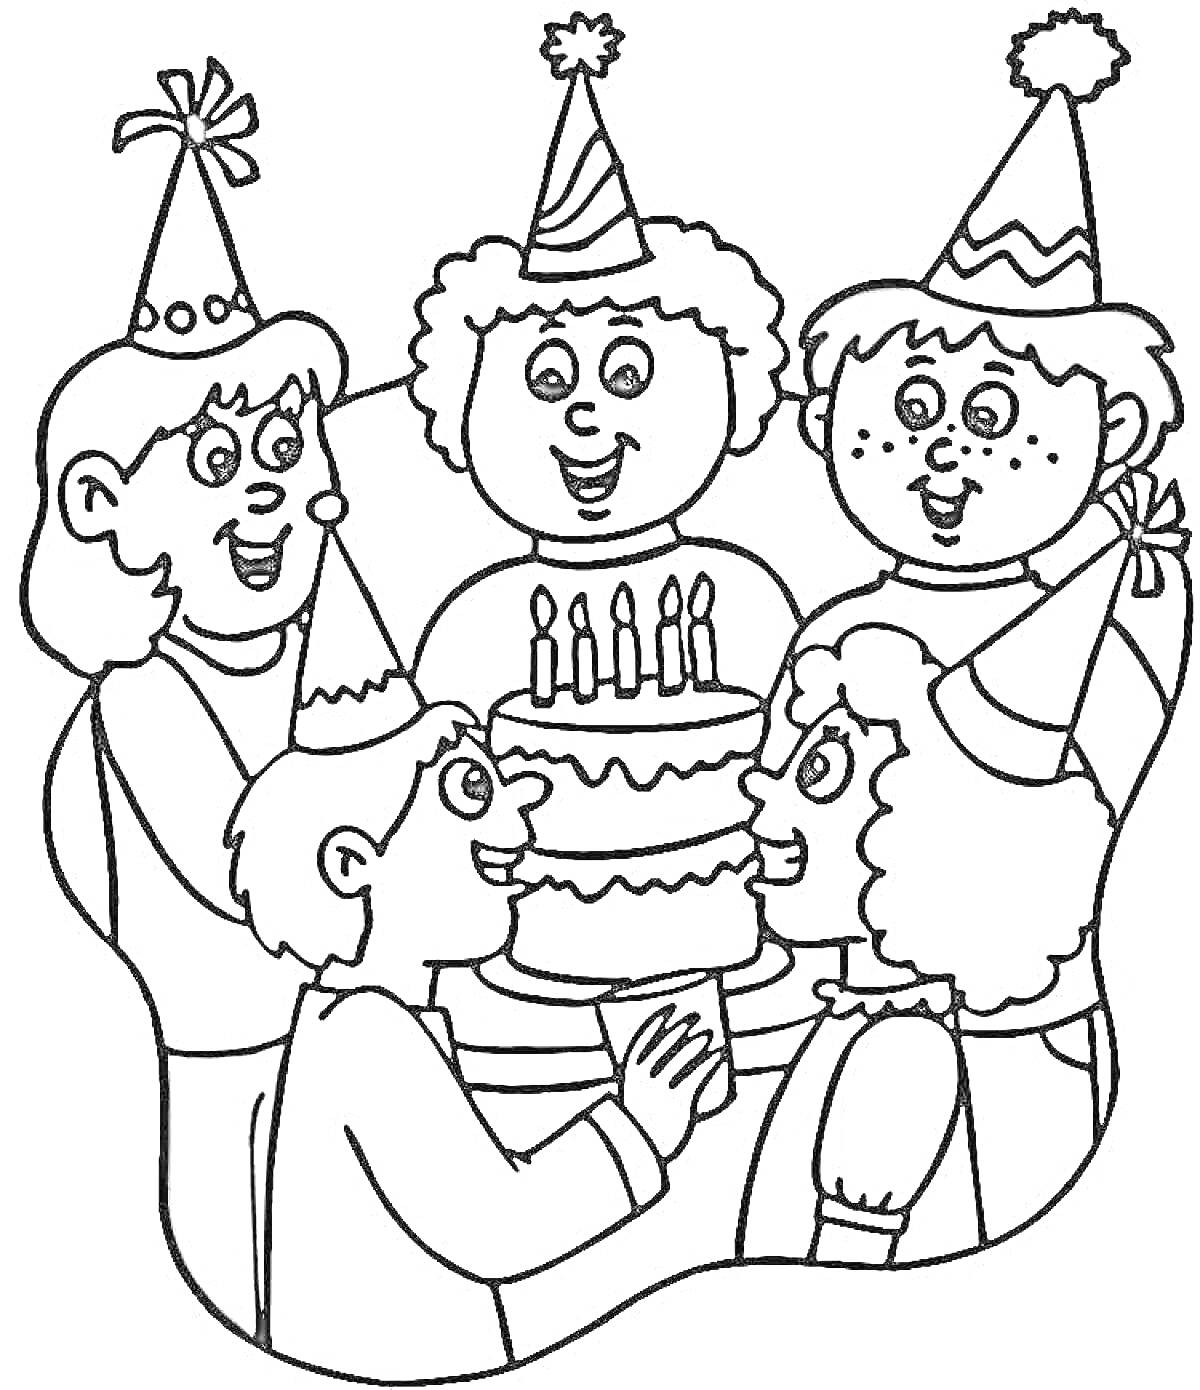 дети с праздничными колпаками вокруг торта с зажженными свечами на вечеринке